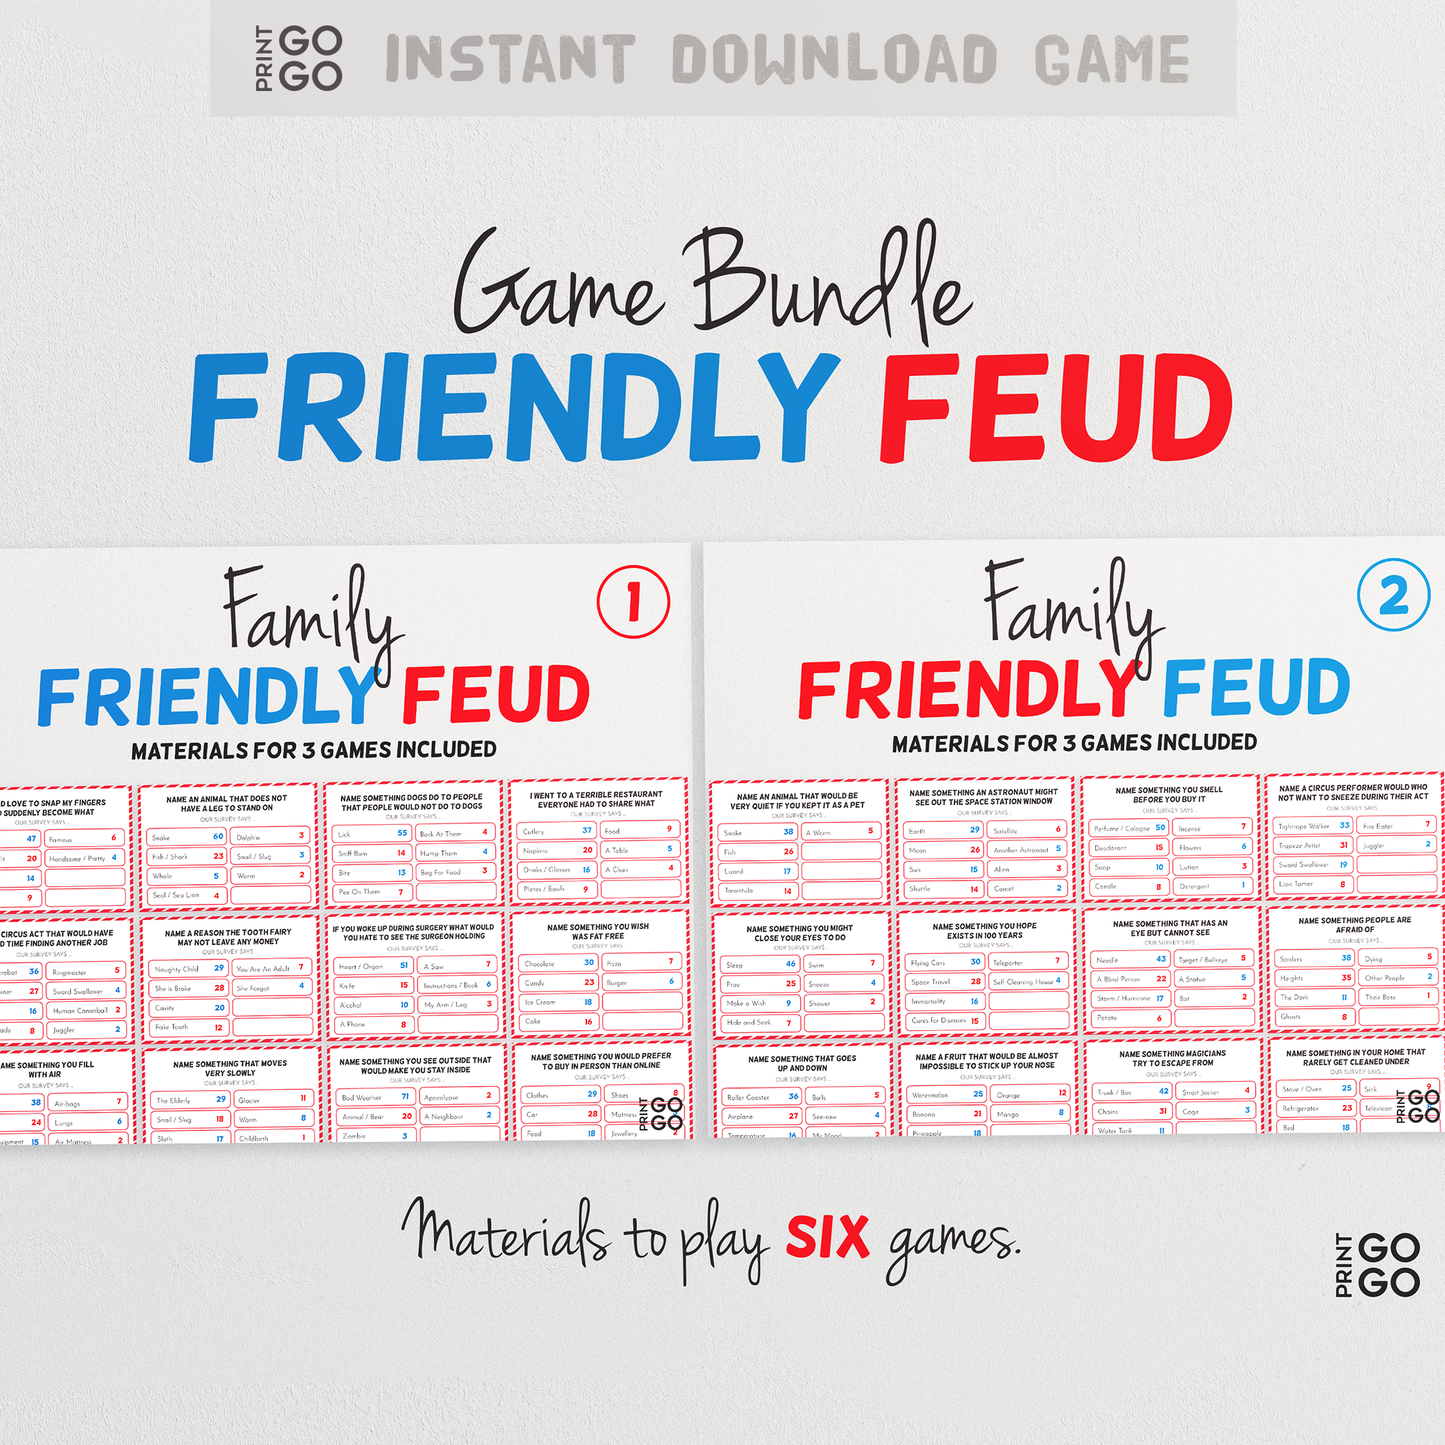 Friendly Feud Game Bundle